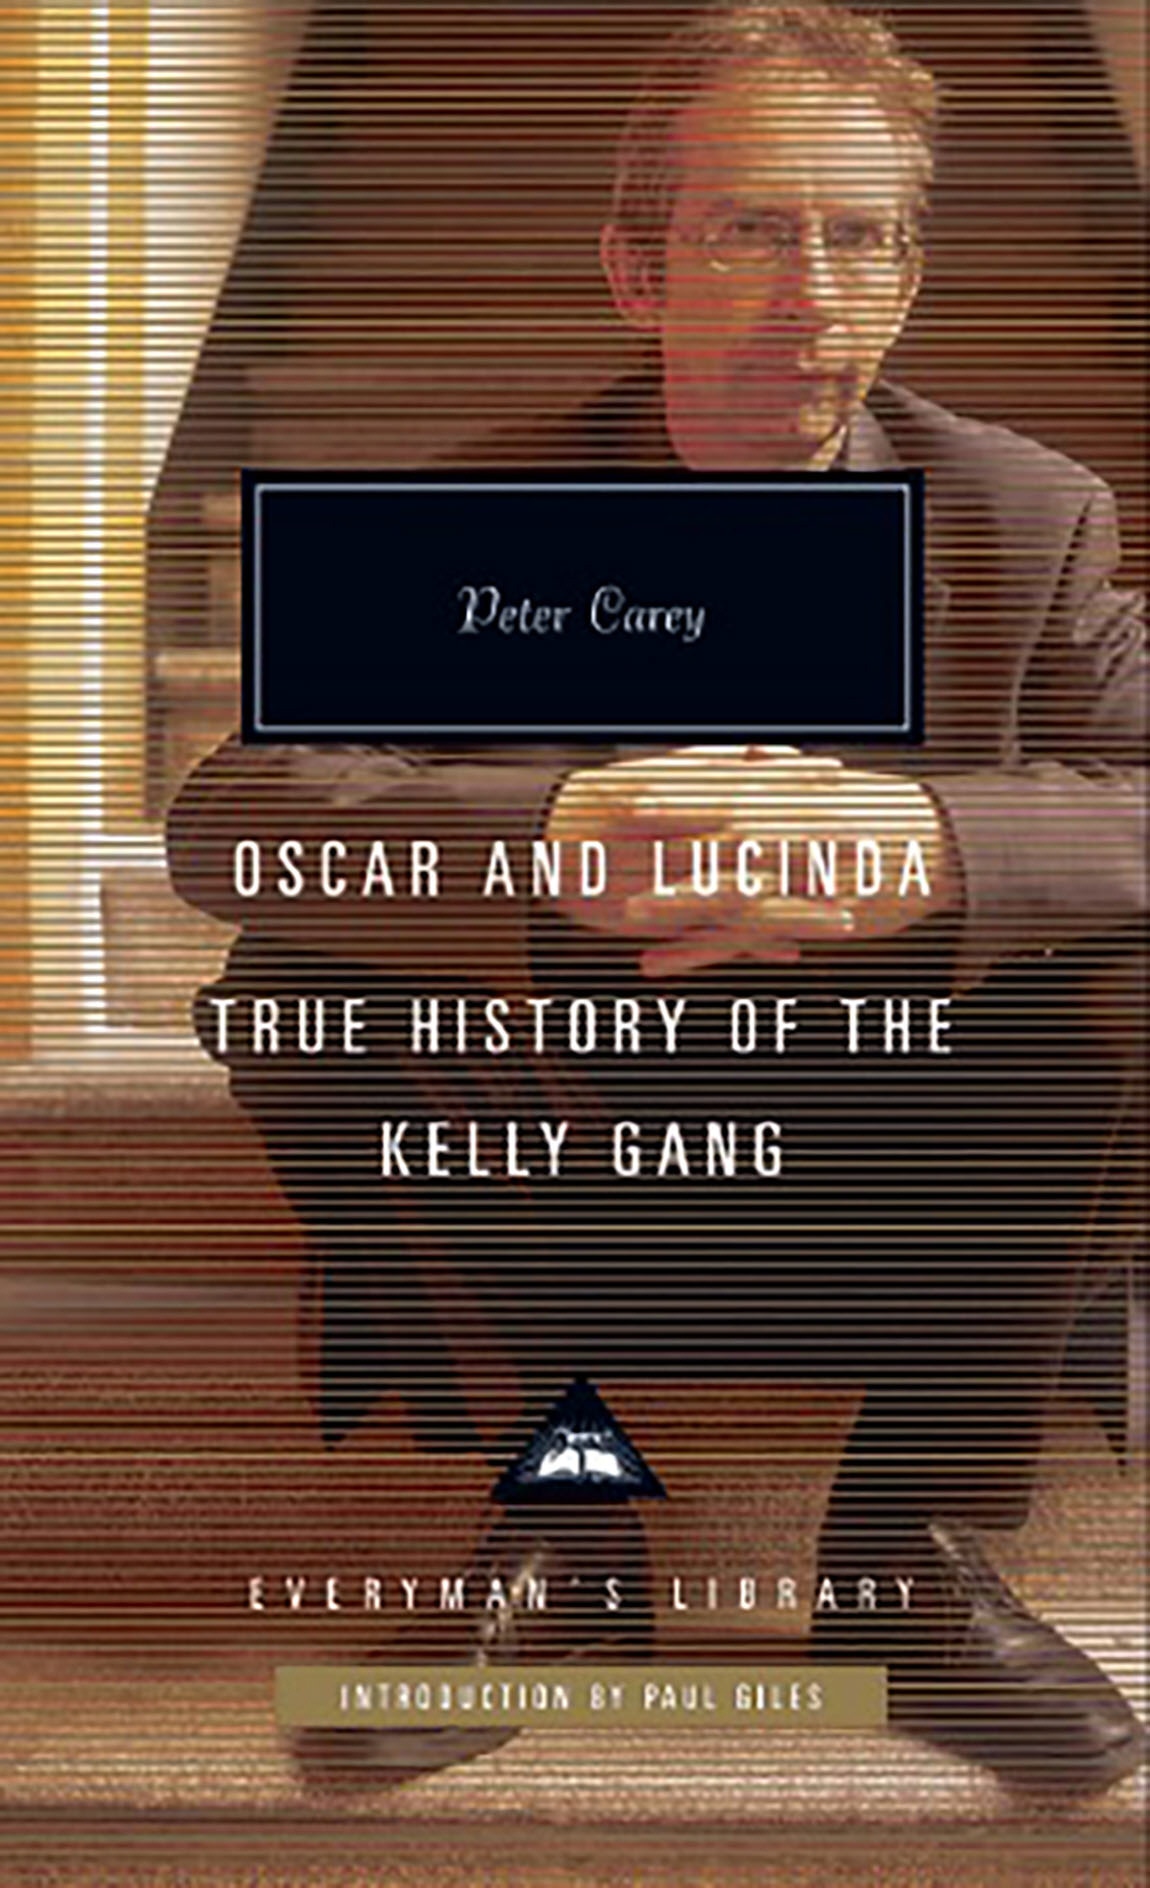 Book “Oscar and Lucinda” by Peter Carey, Peter Giles — September 5, 2019